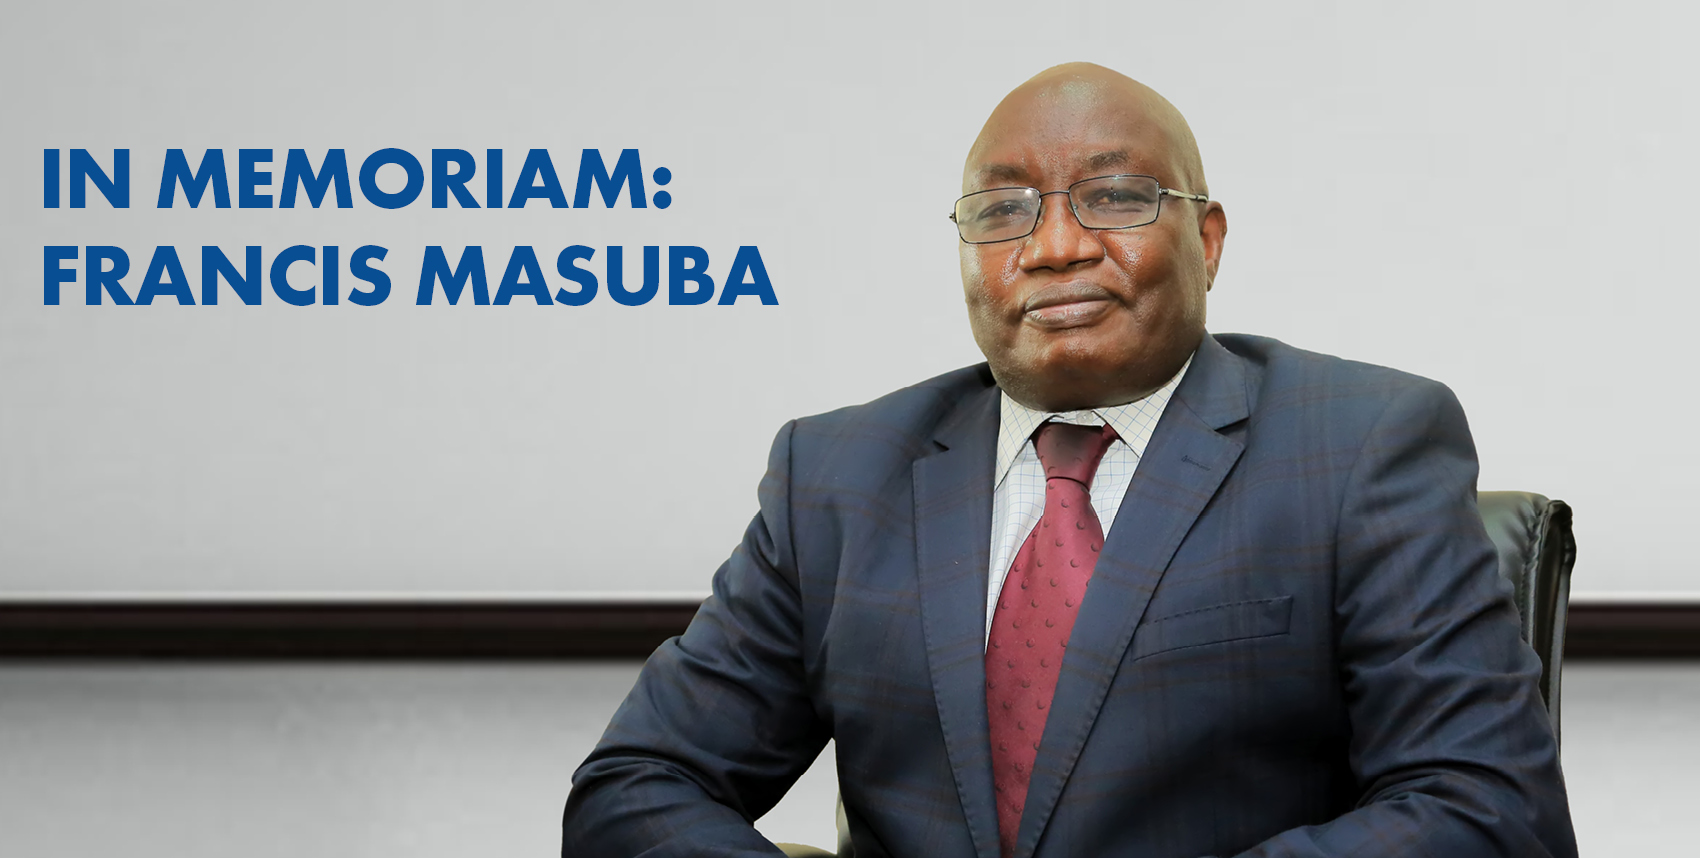 In memoriam: Francis Masuba